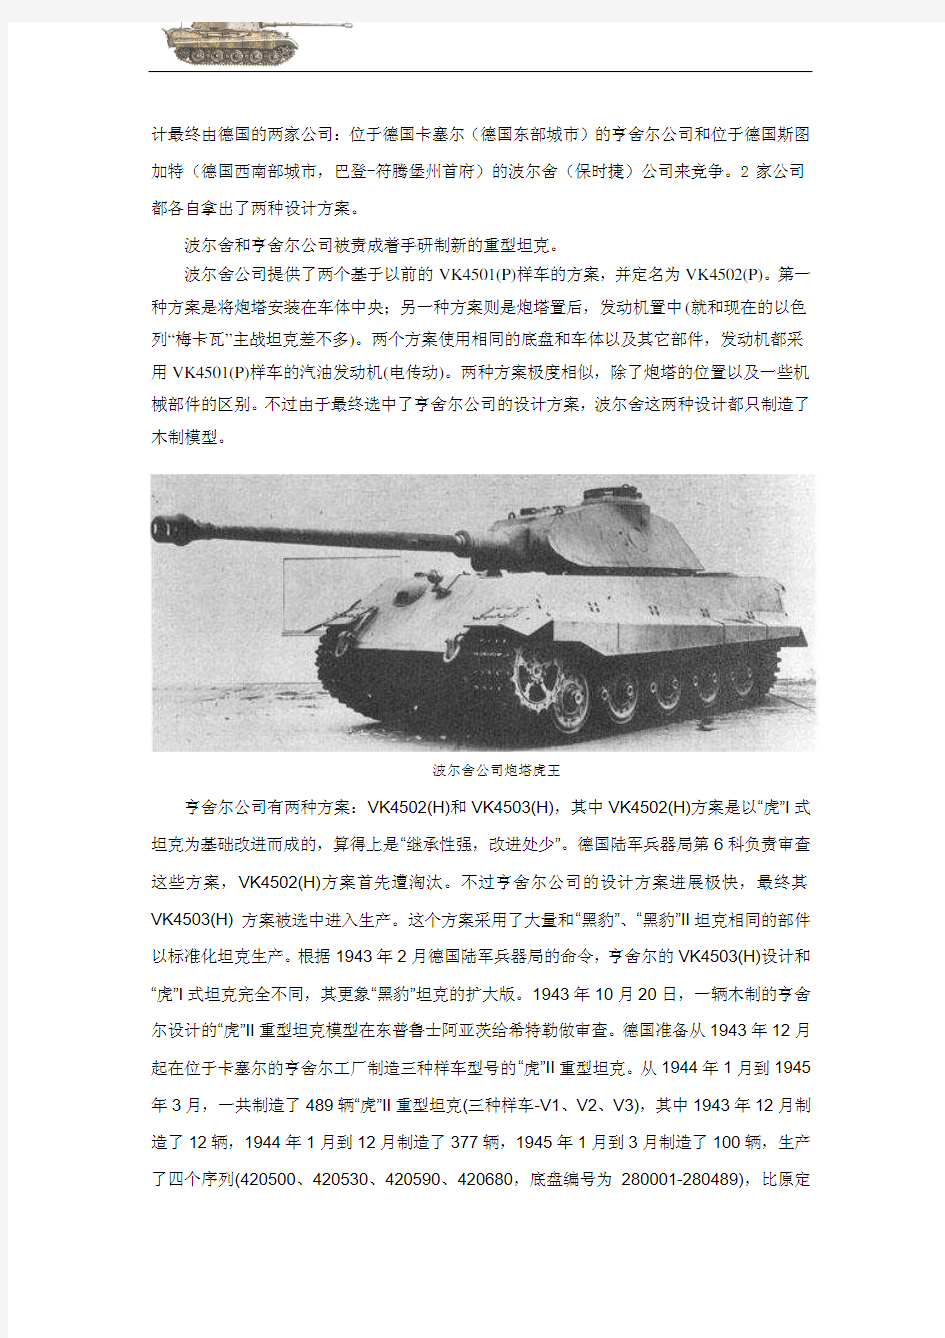 虎王坦克──第二次世界大战陆战之王